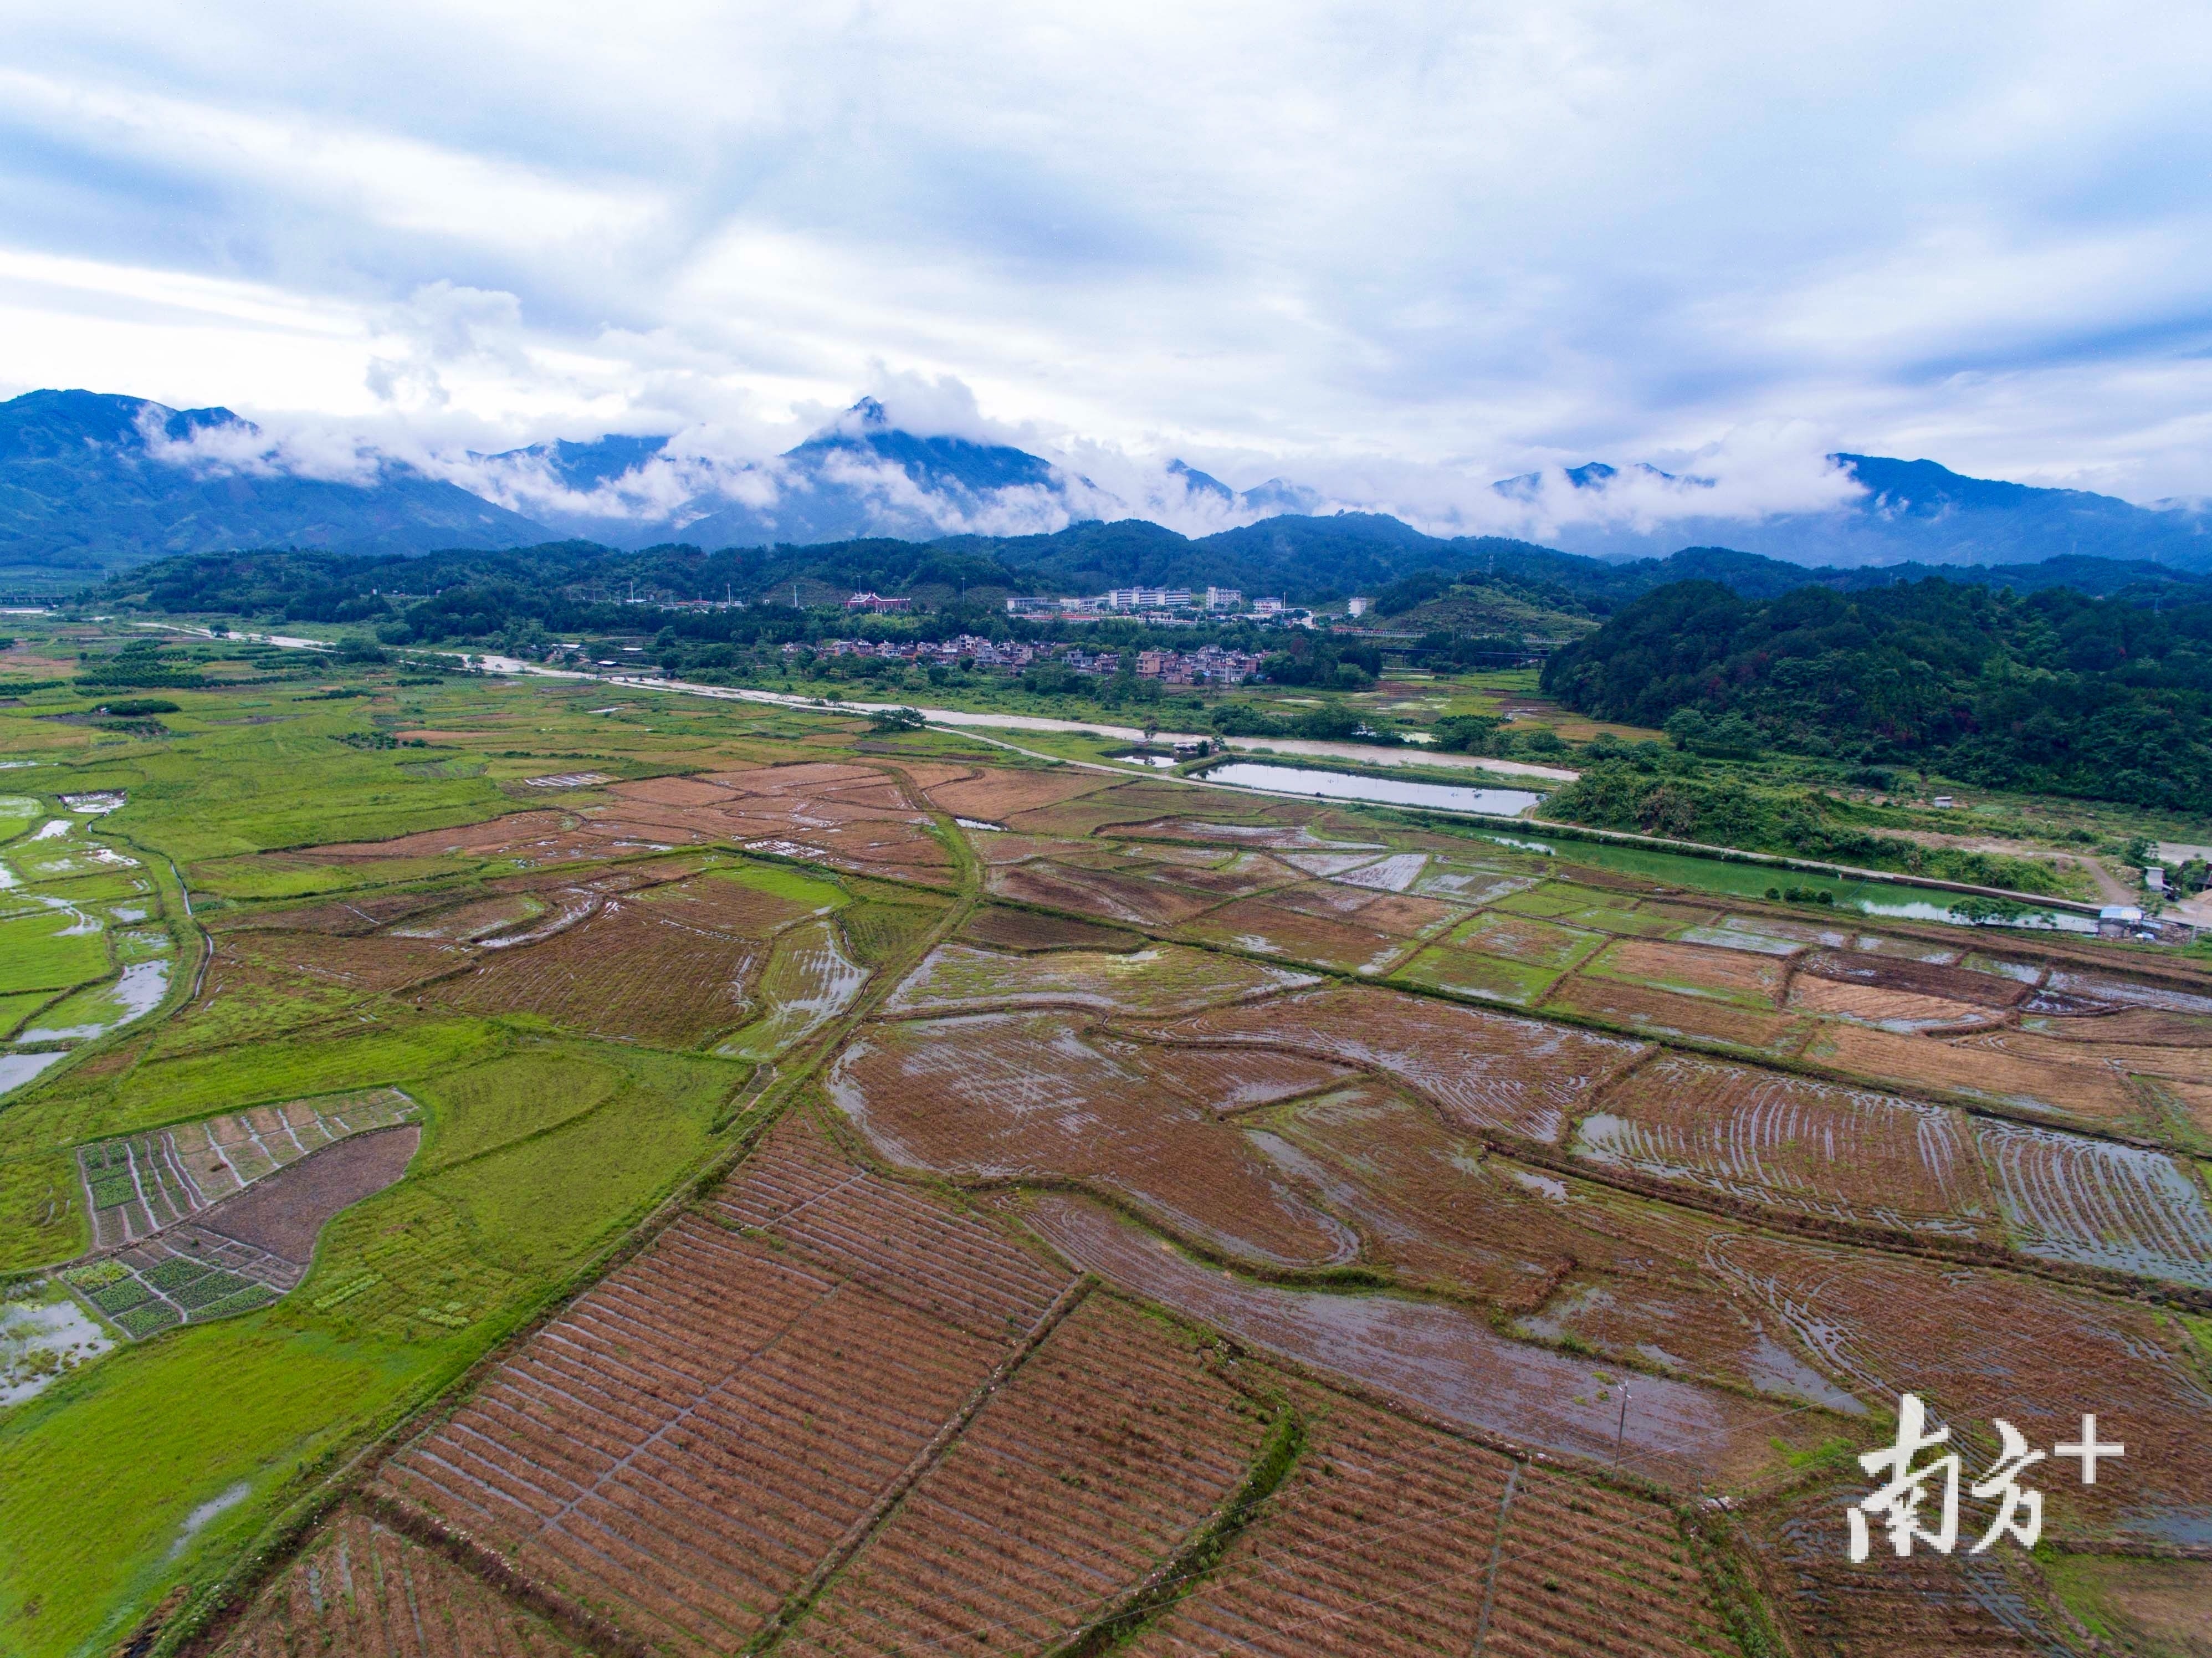 朱岗村建设优质稻生产基地，并交由村经济社统一管理。